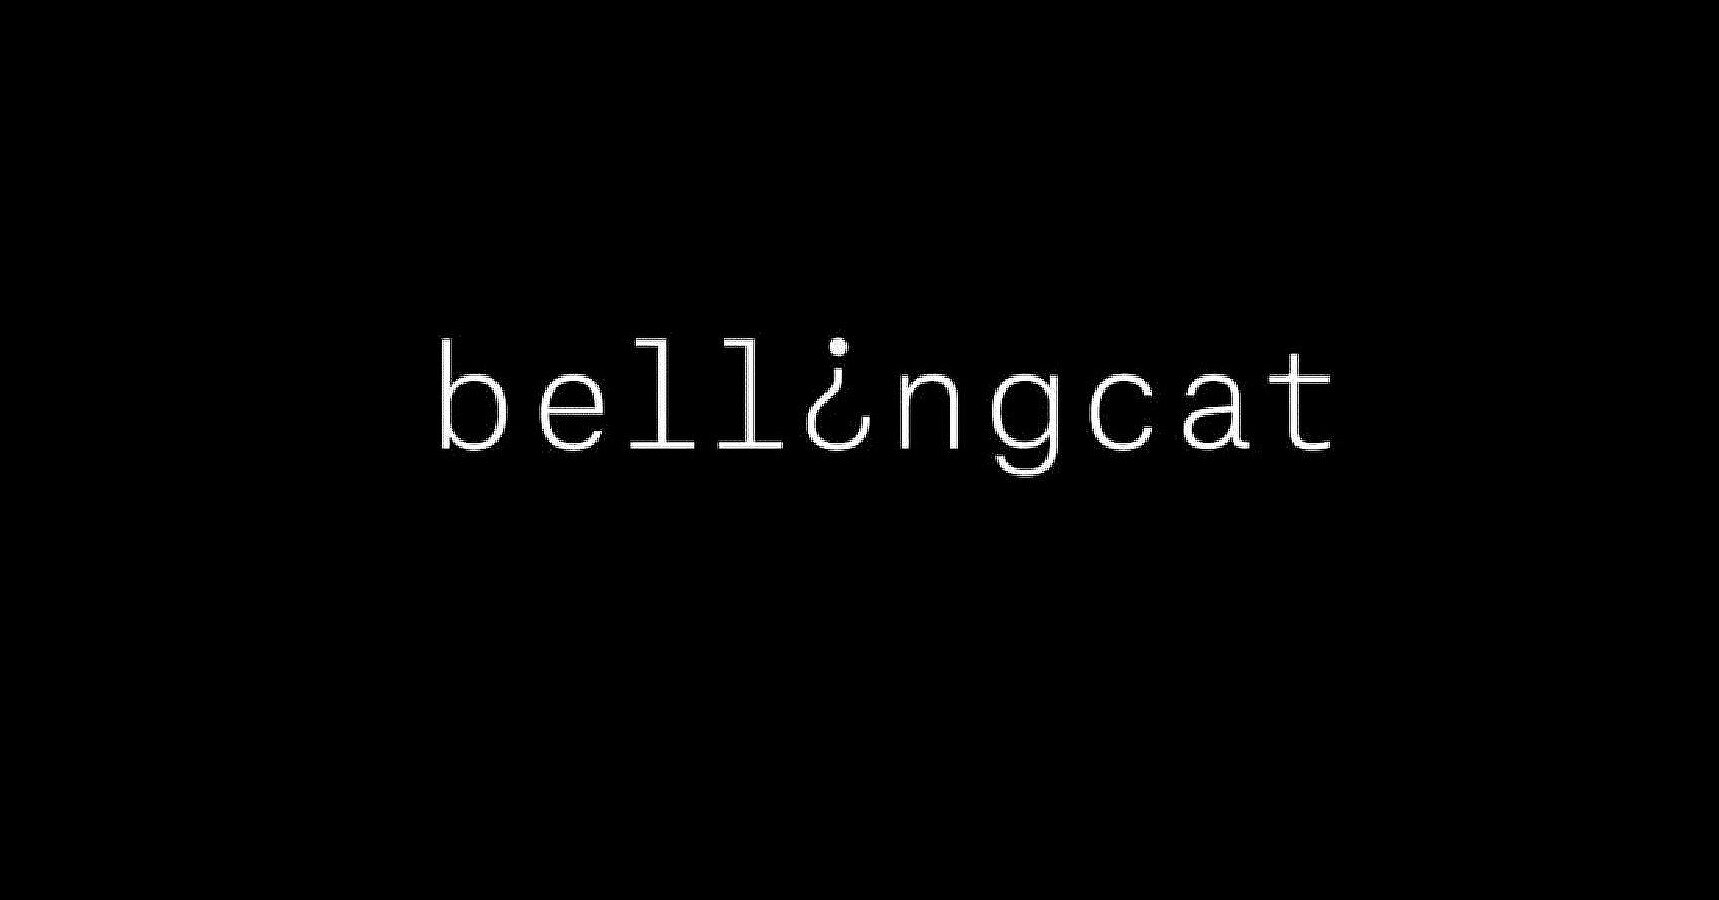 Вагнергейт: Опубликована первая часть расследования Bellingcat